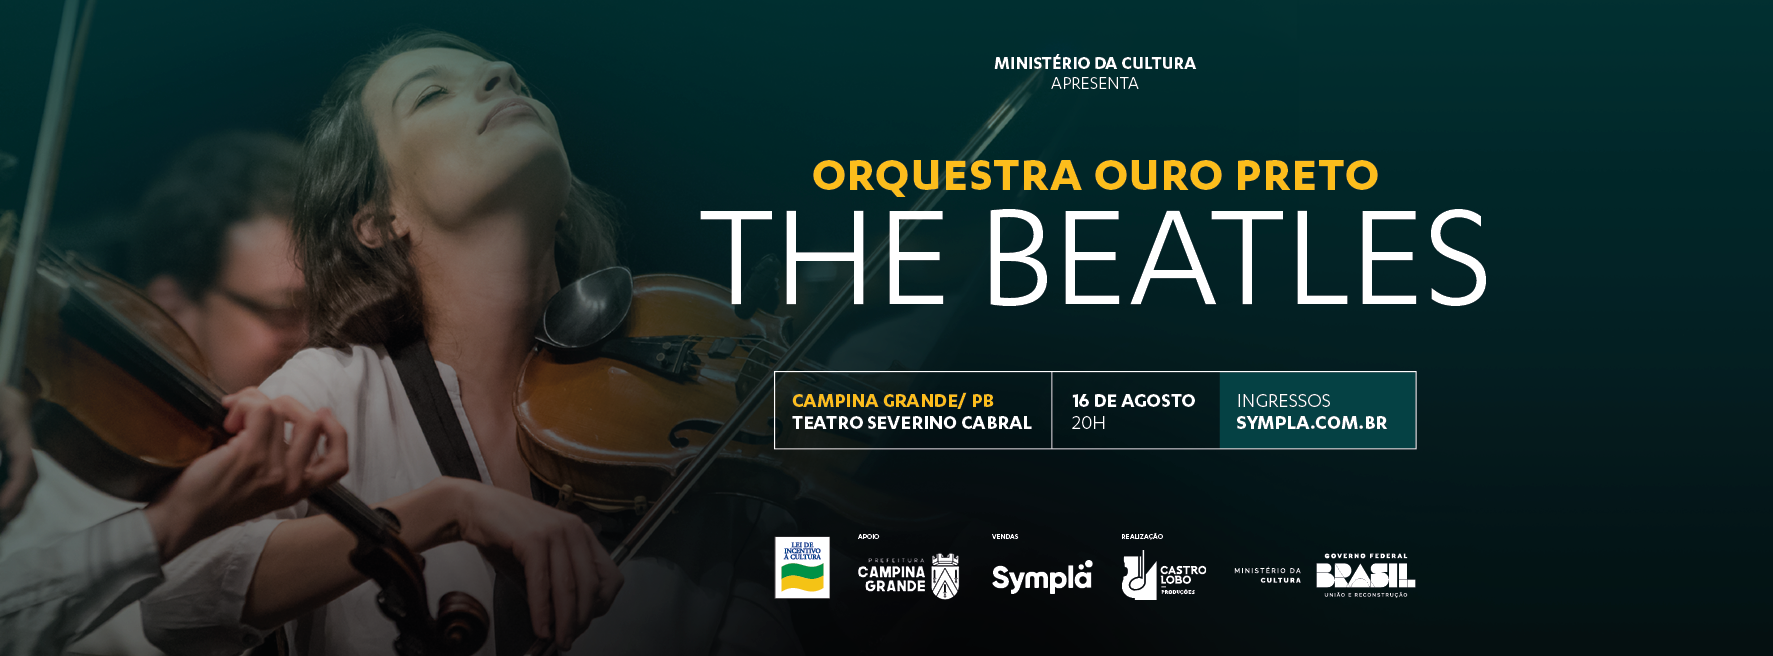 The Beatles, em Campina Grande – Orquestra Ouro Preto